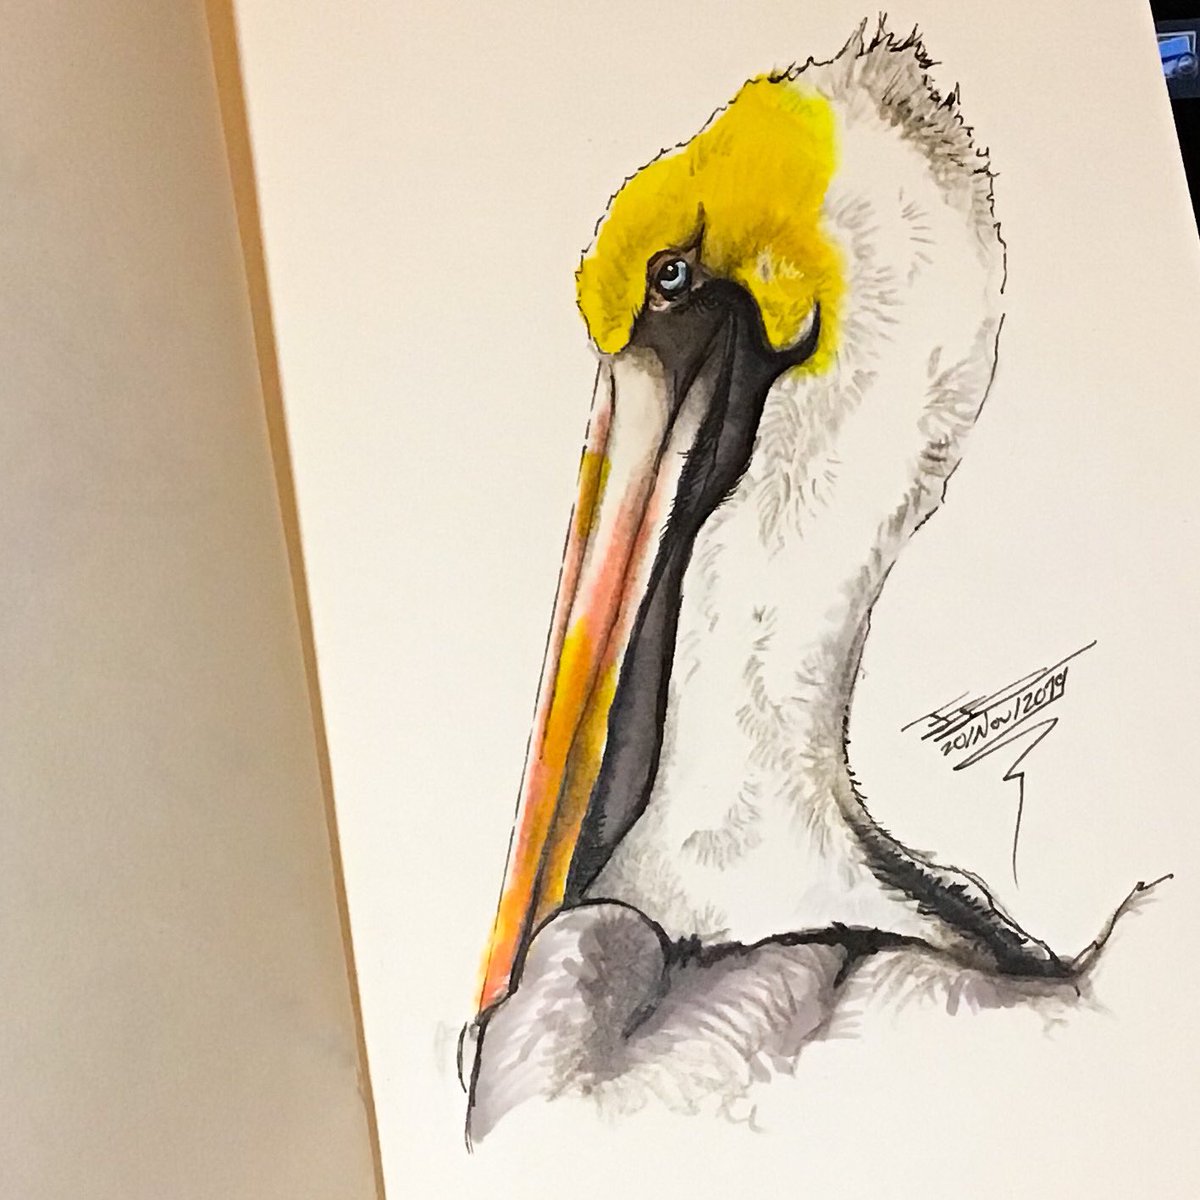 Más #aves !! Espero les guste 
#pelicano #pelican #pelecanusoccidentalis #prismacolor #illustration #ink #markers #bird

Hay veces que vasta con que una persona le guste, para continuar ilustrando...

instagram.com/p/B5HYEHQAFRH/…